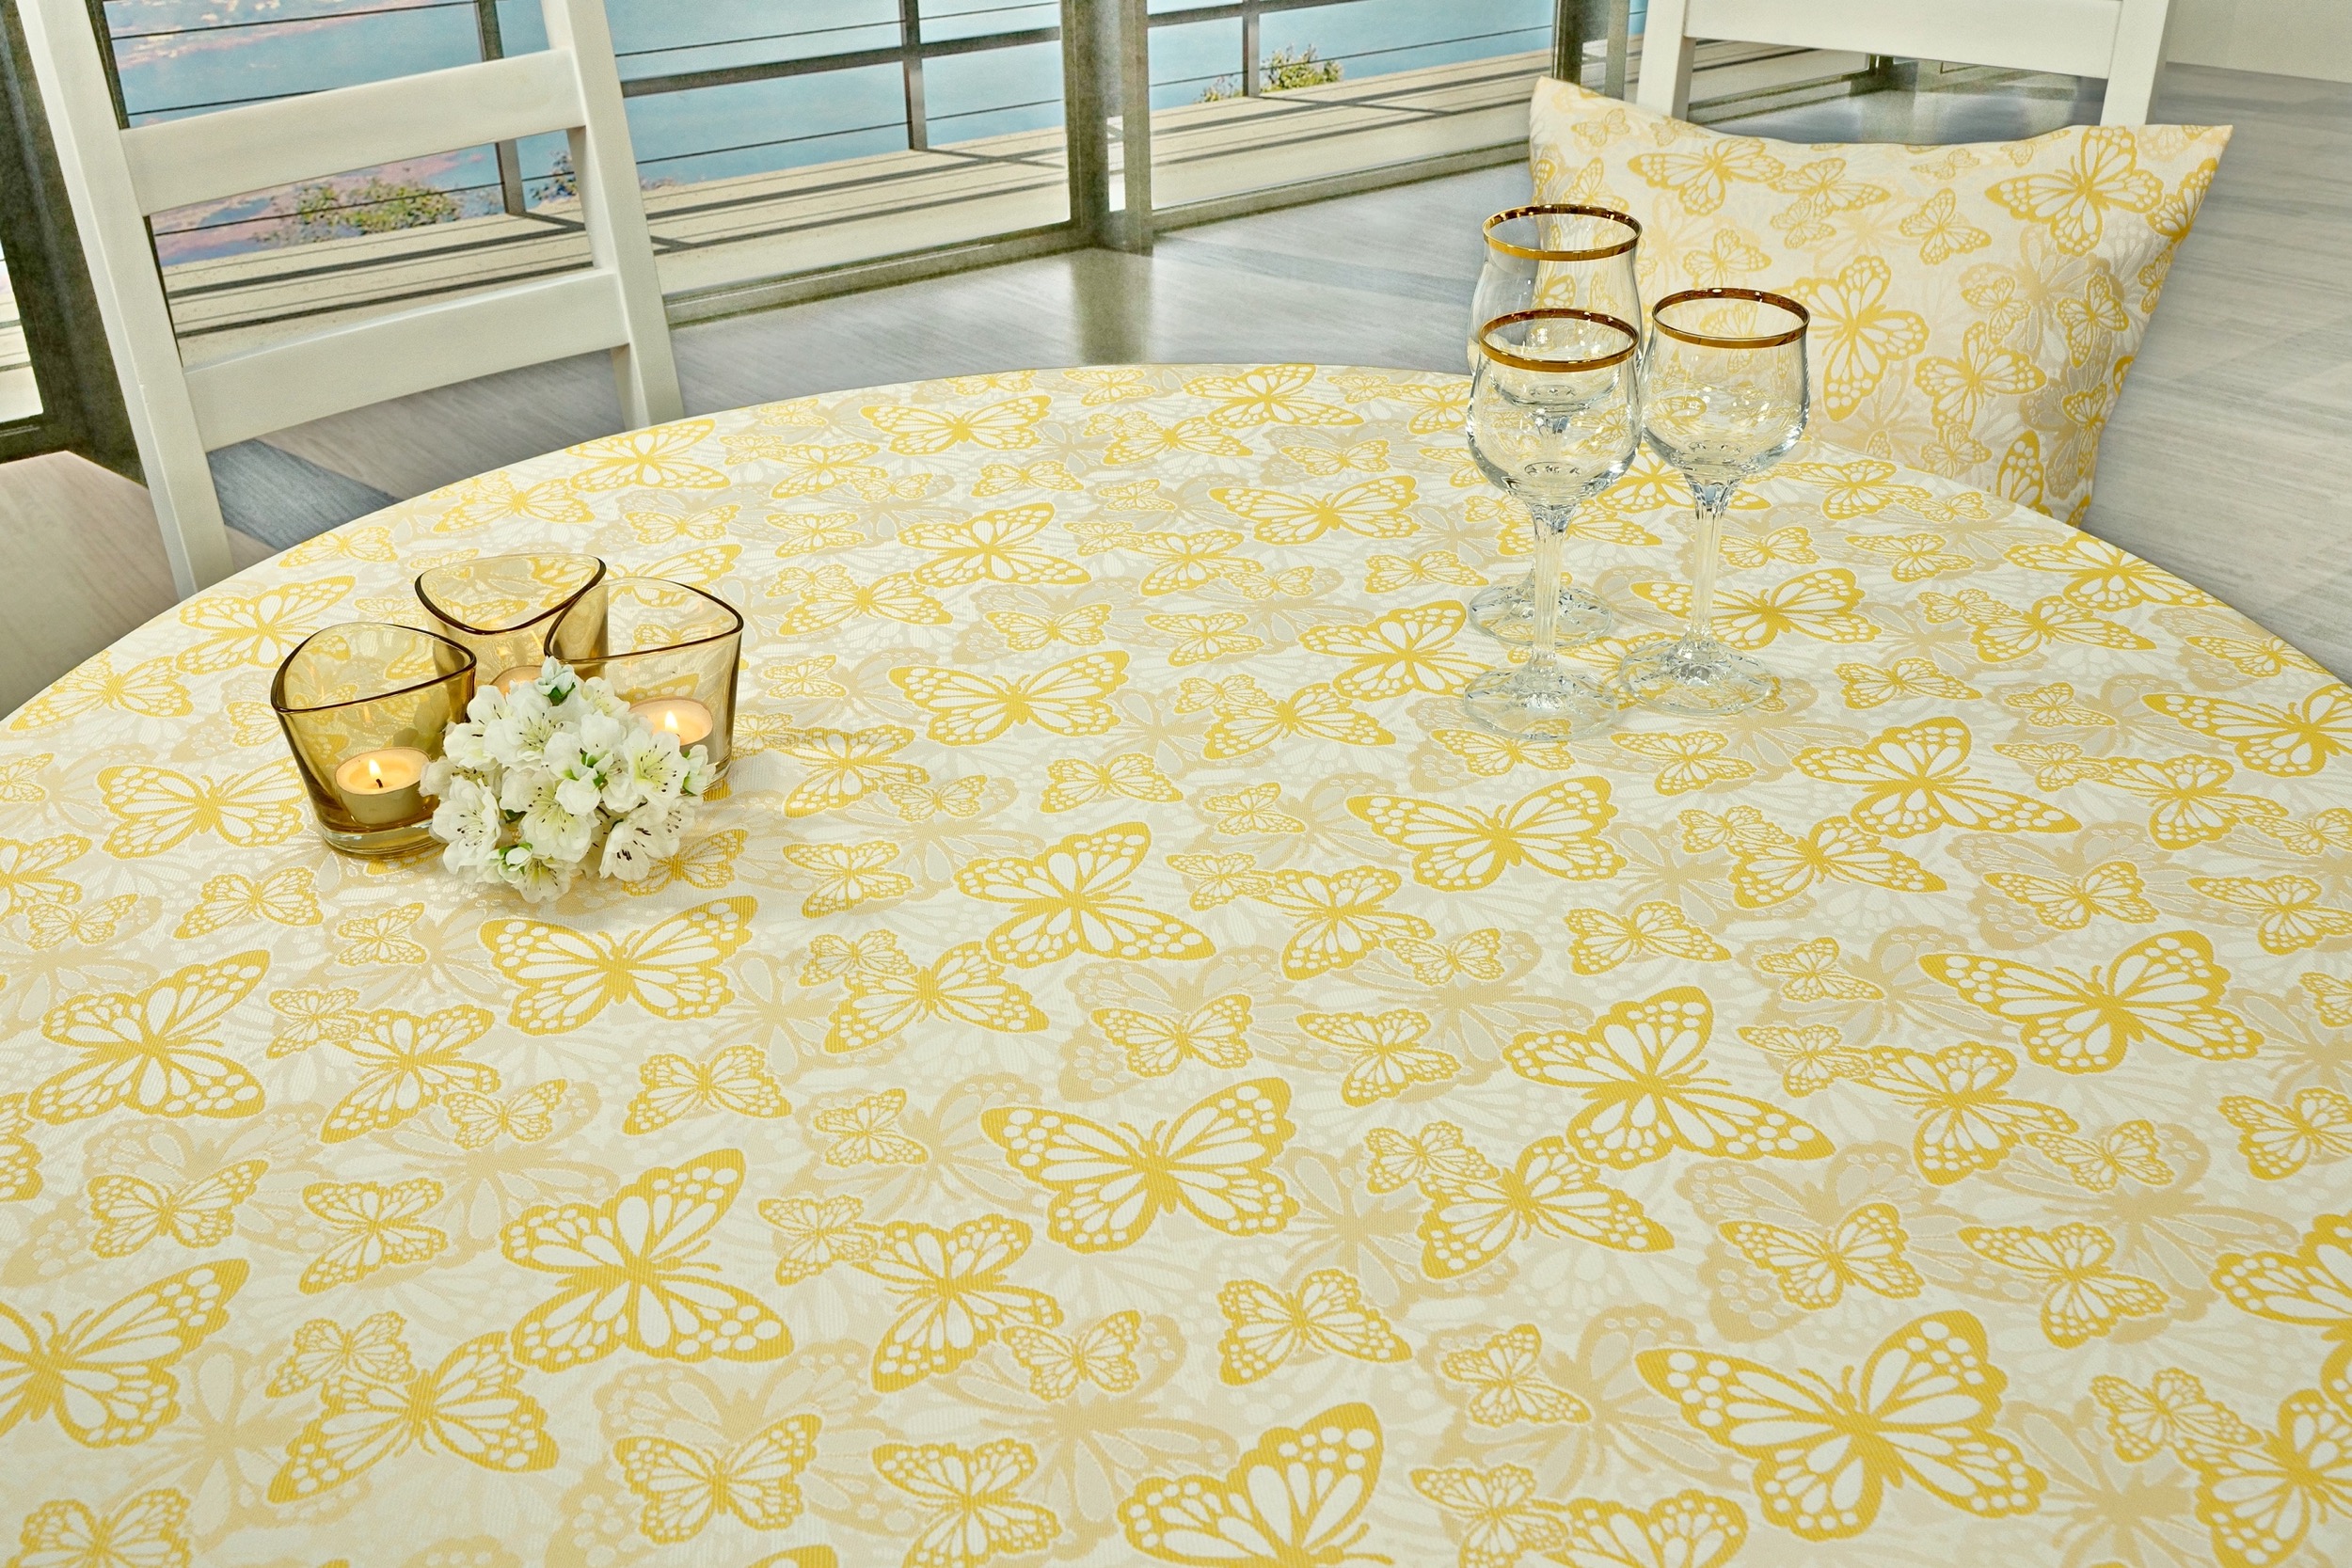 Fleckgeschützte Tischdecke Weiß Gelb Muster Springtime Breite 90 cm OVAL